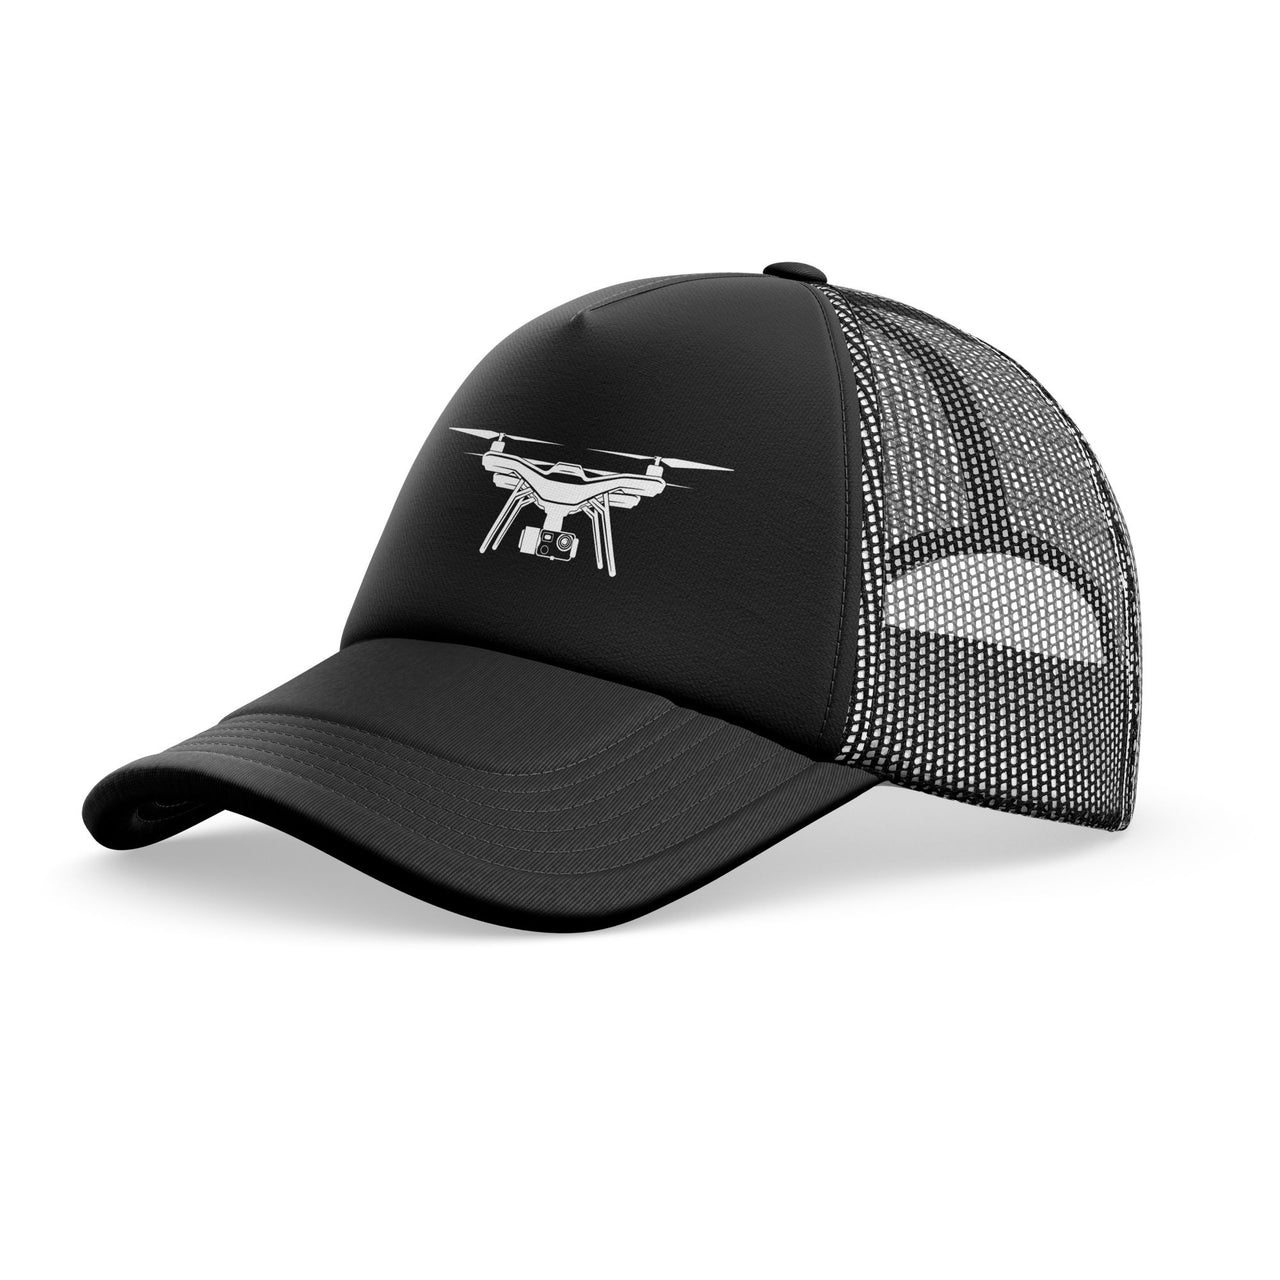 Drone Silhouette Designed Trucker Caps & Hats